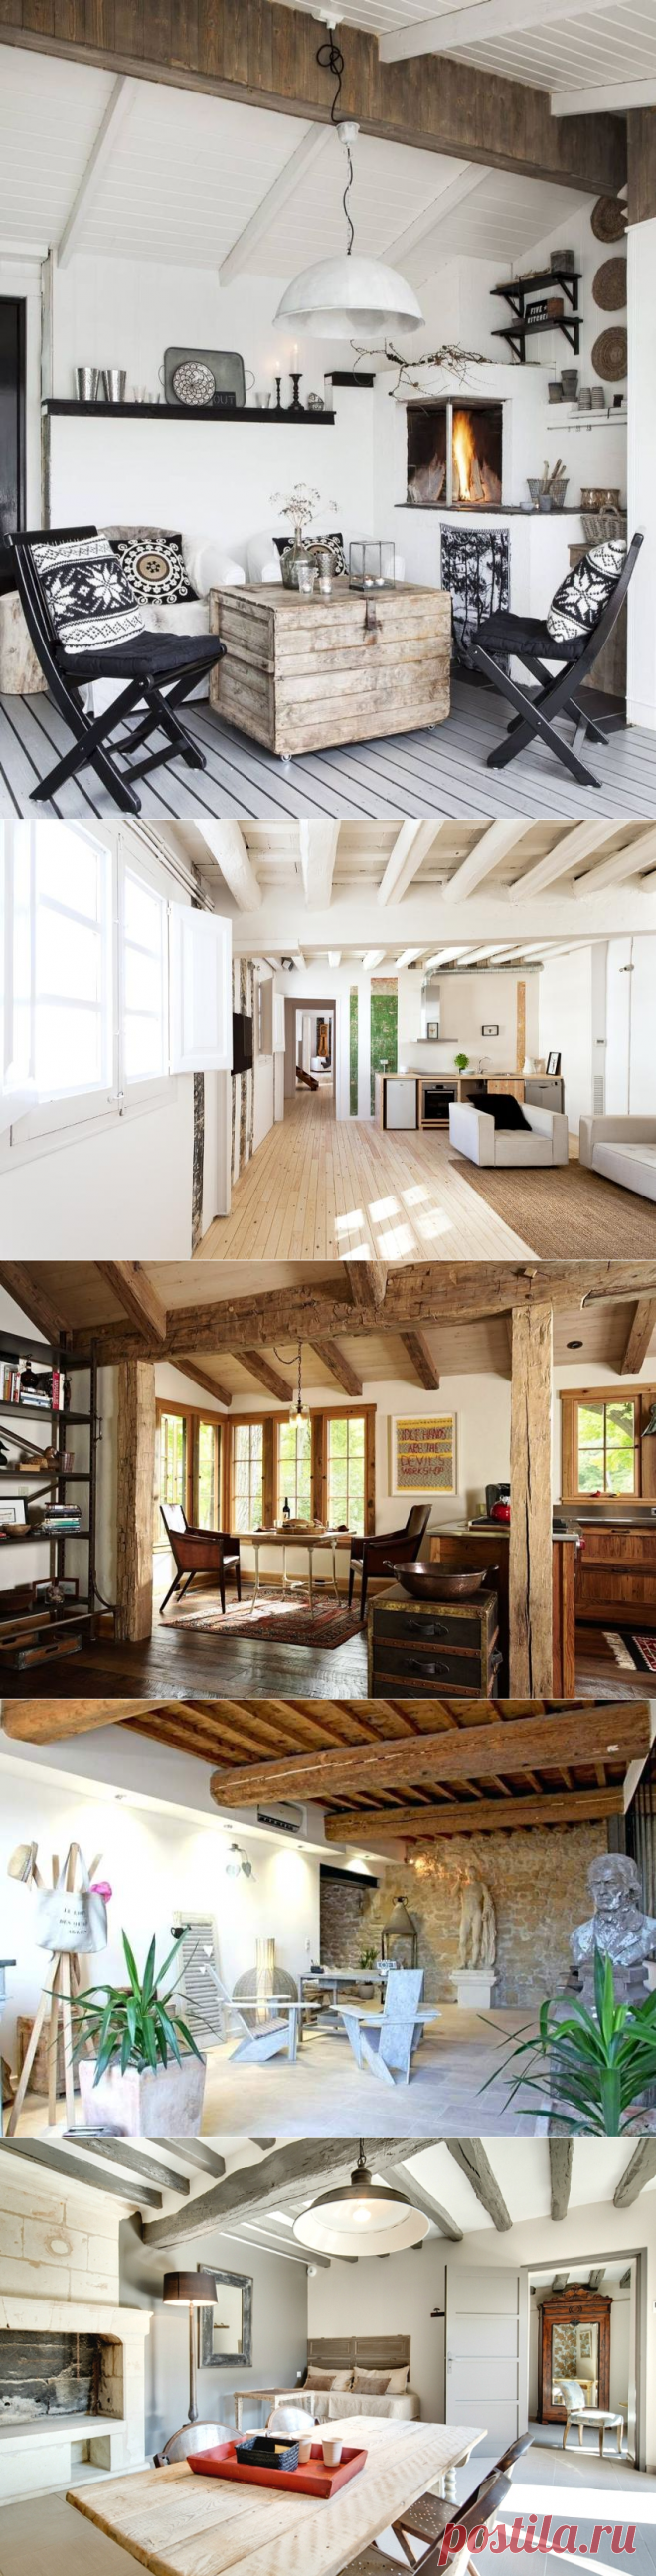 Деревянный потолок: фото, утепление и отделка деревянных потолков